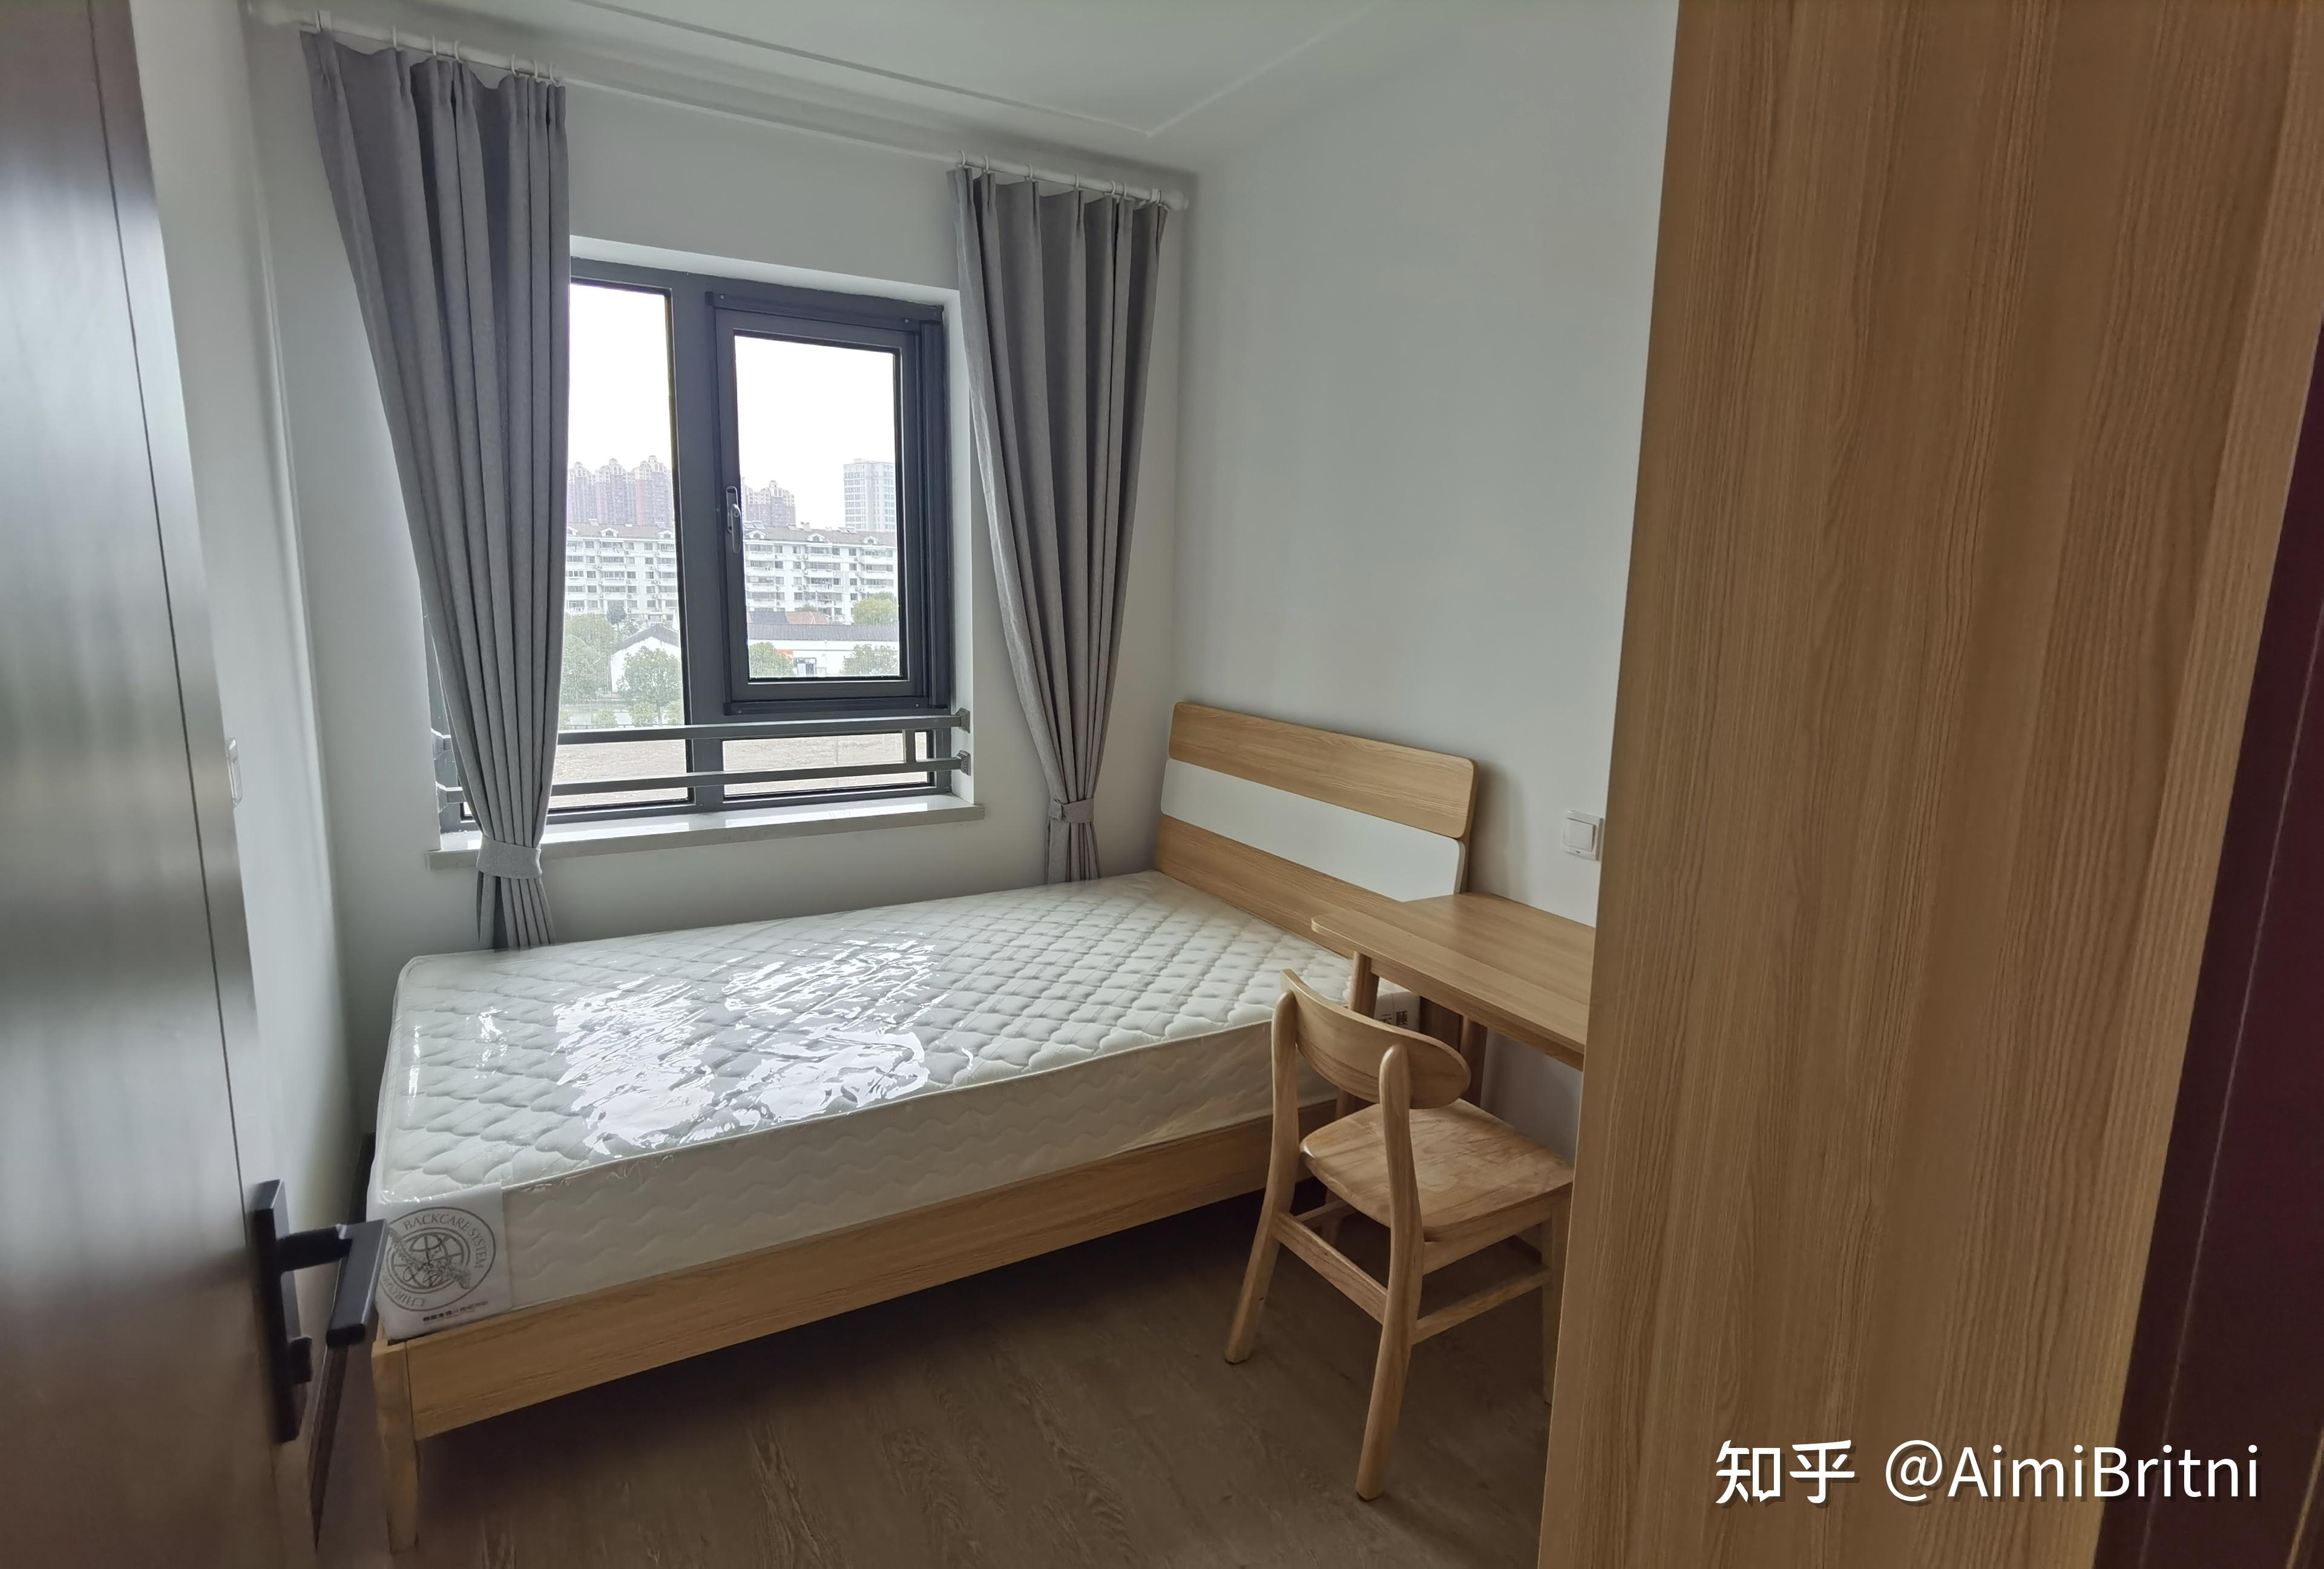 住在上海公租房里是一种怎样的体验?